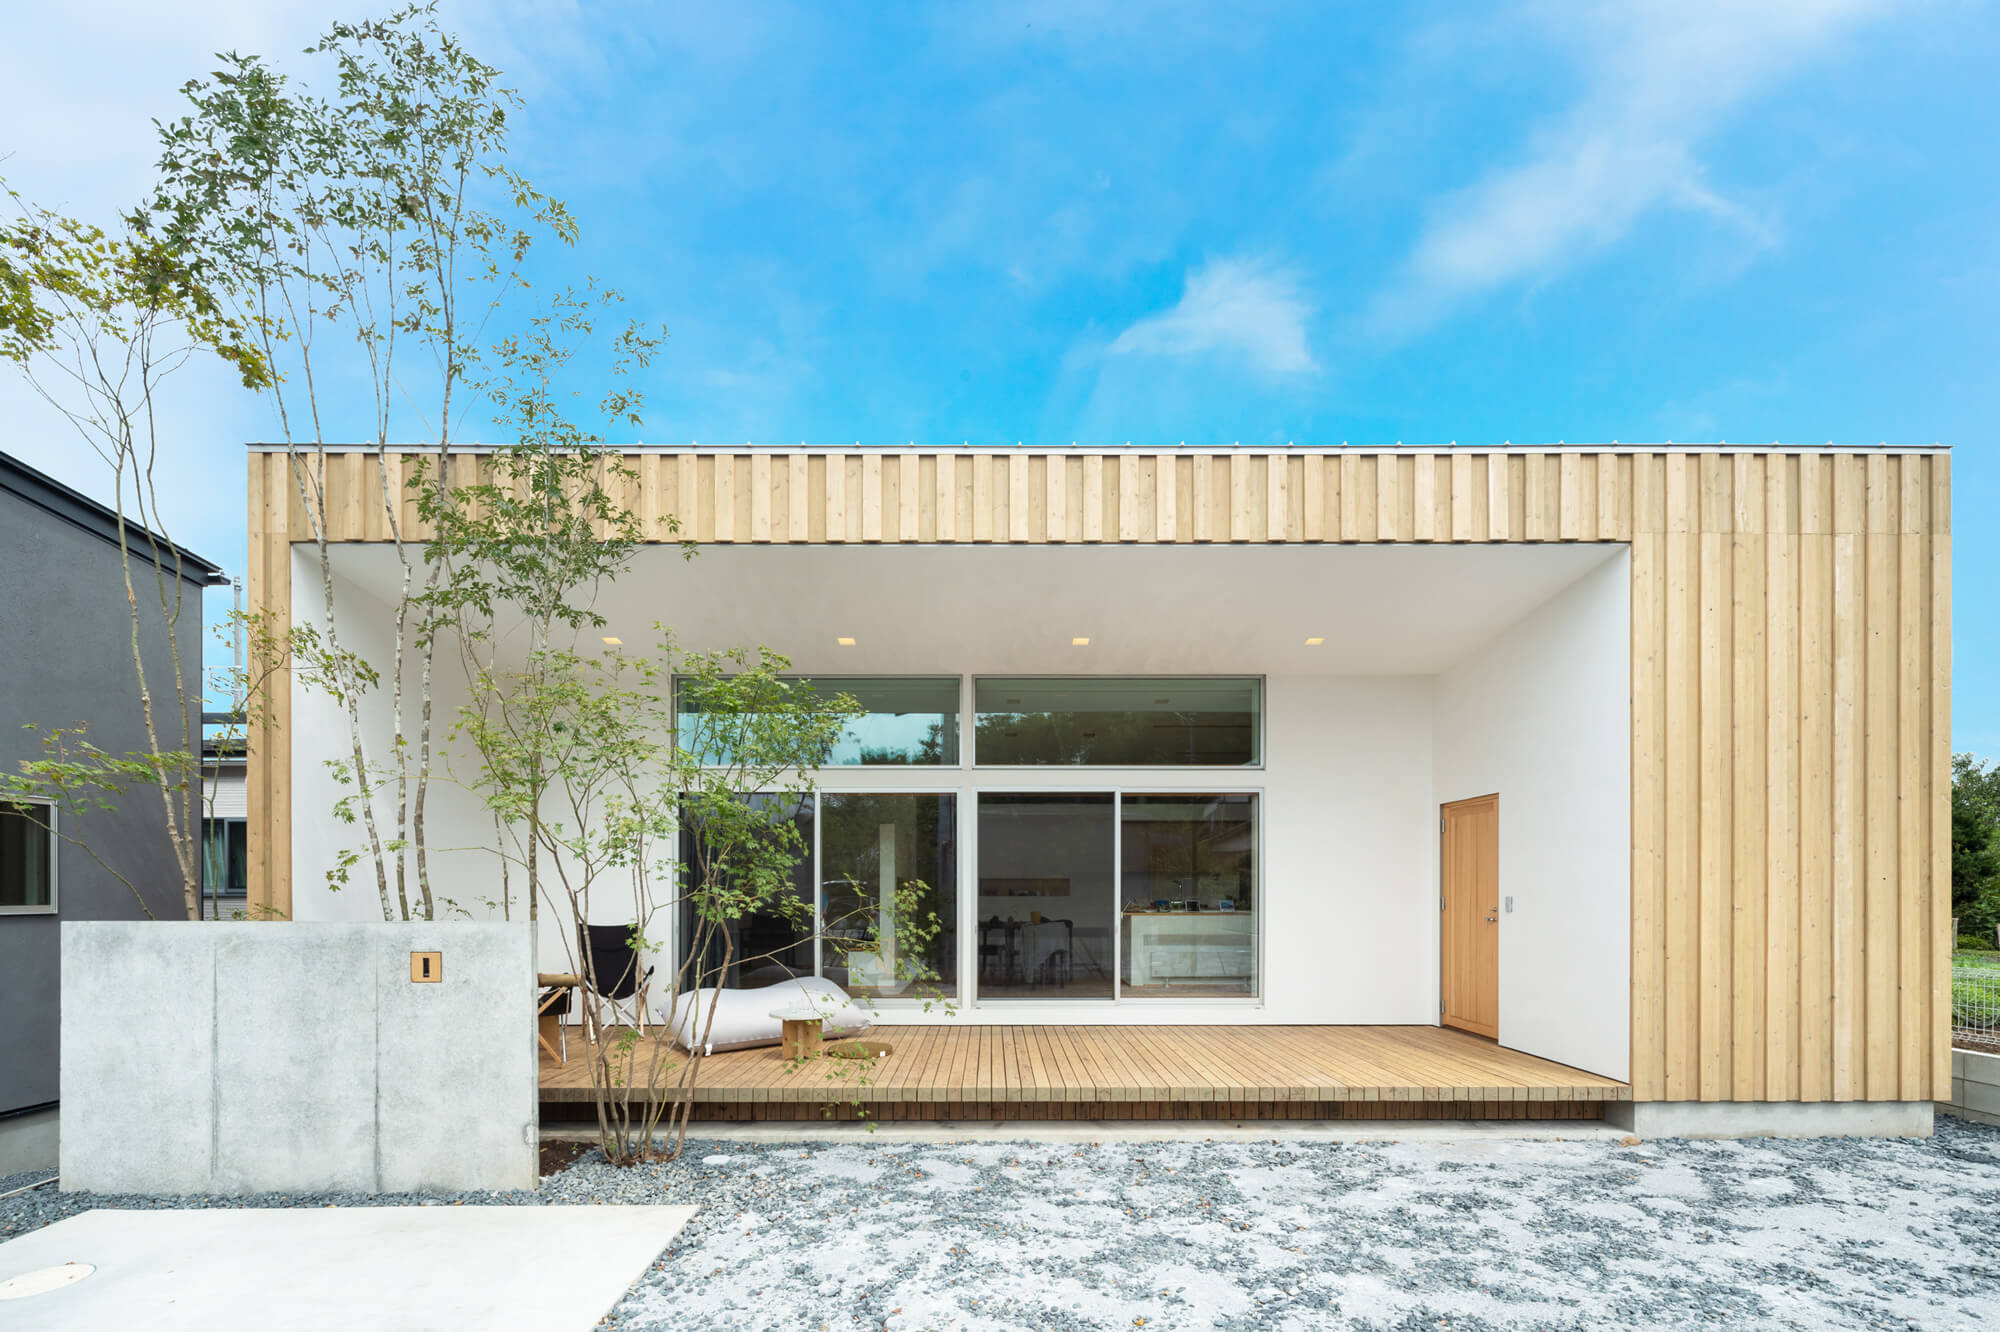 SUDOホーム施工平屋「環境に変化する家」千葉の平屋だけのモデルハウス